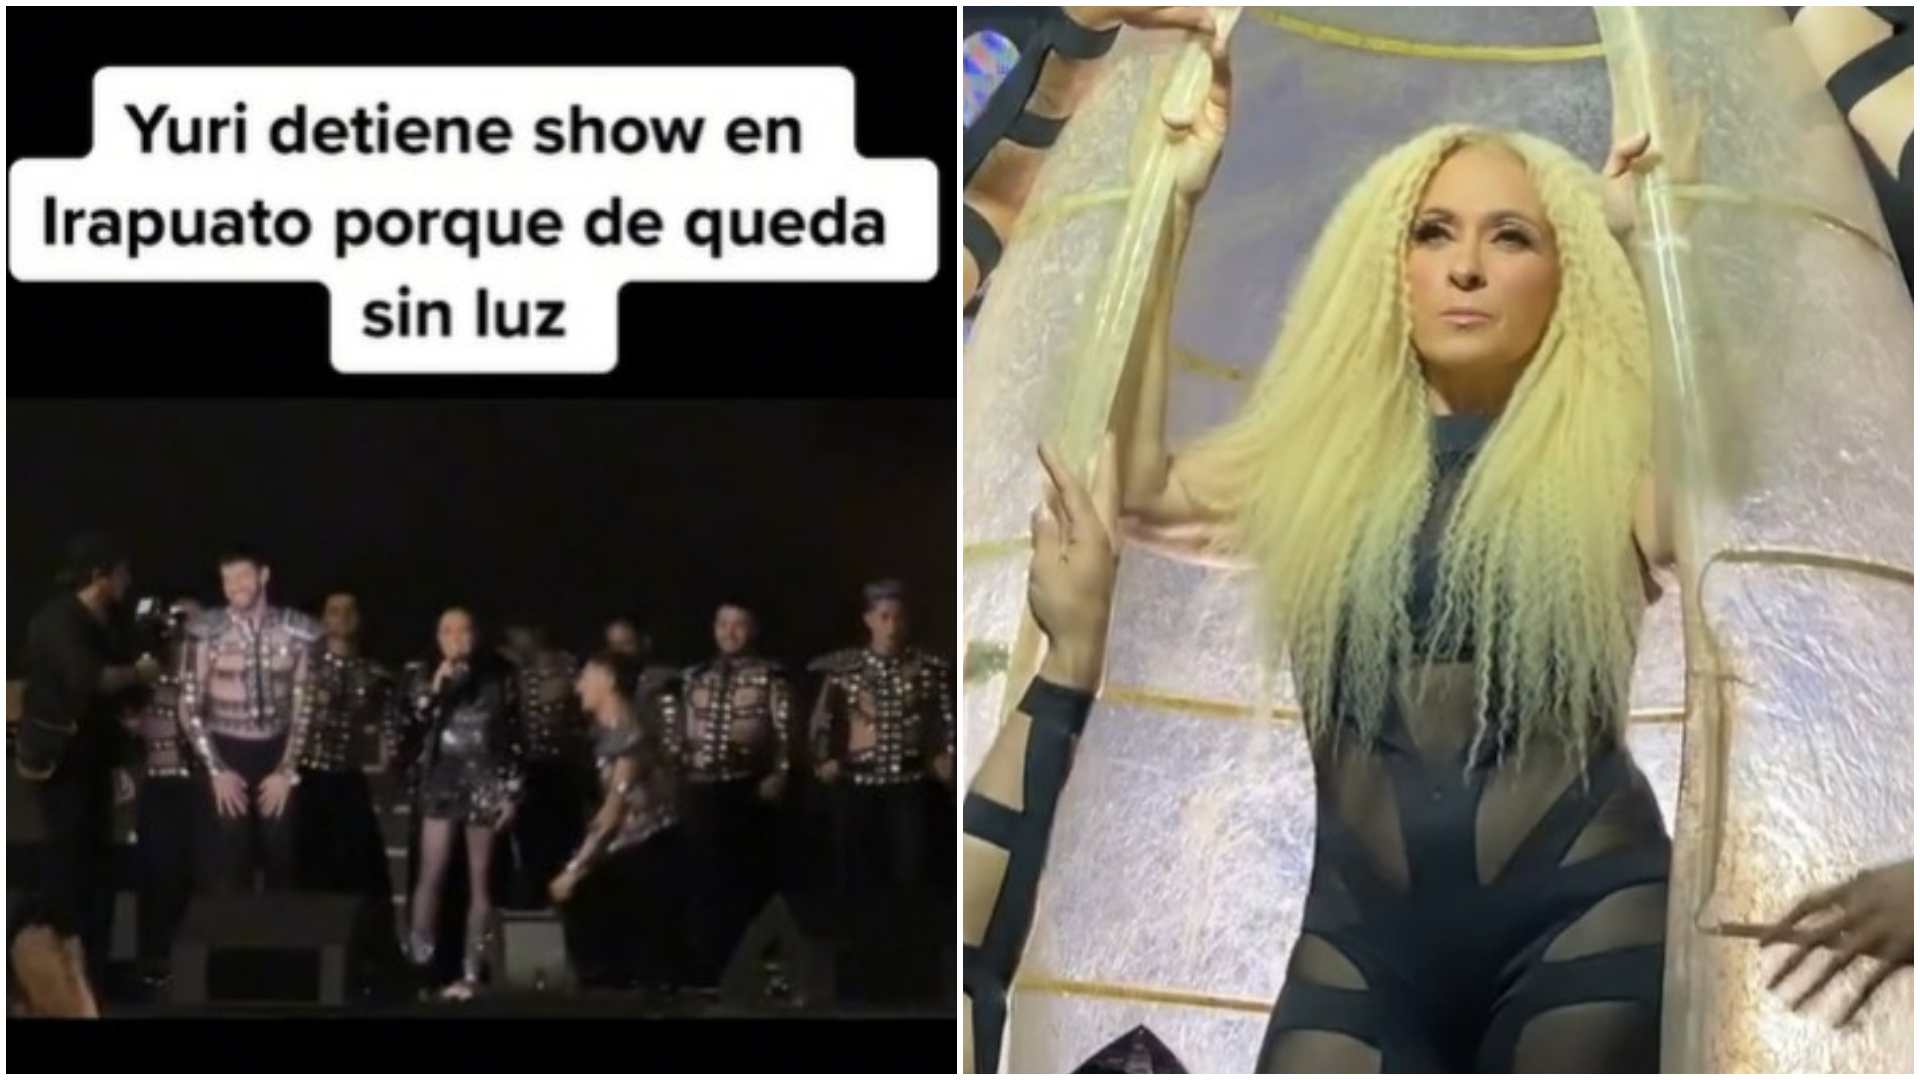 ¡Con el apagón! Yuri detuvo un concierto en Guanajuato por falla en servicio de luz